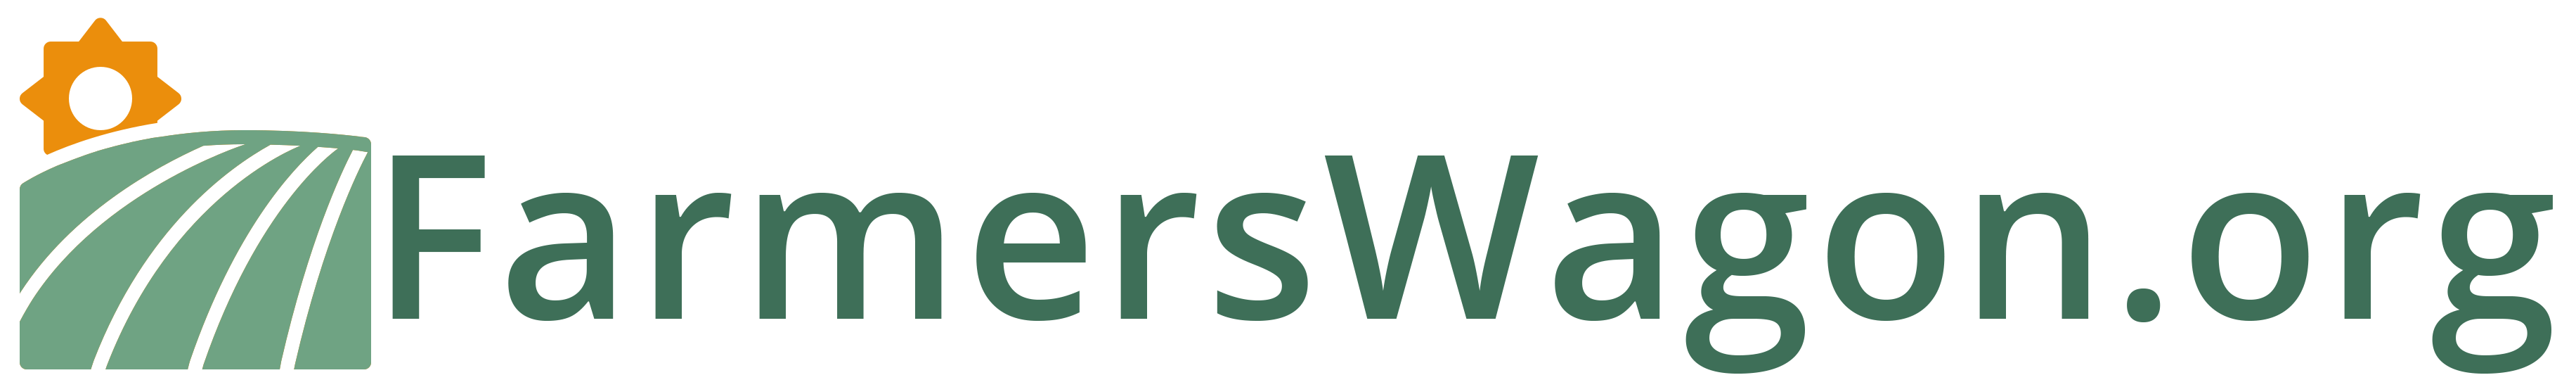 FarmersWagon.org logo